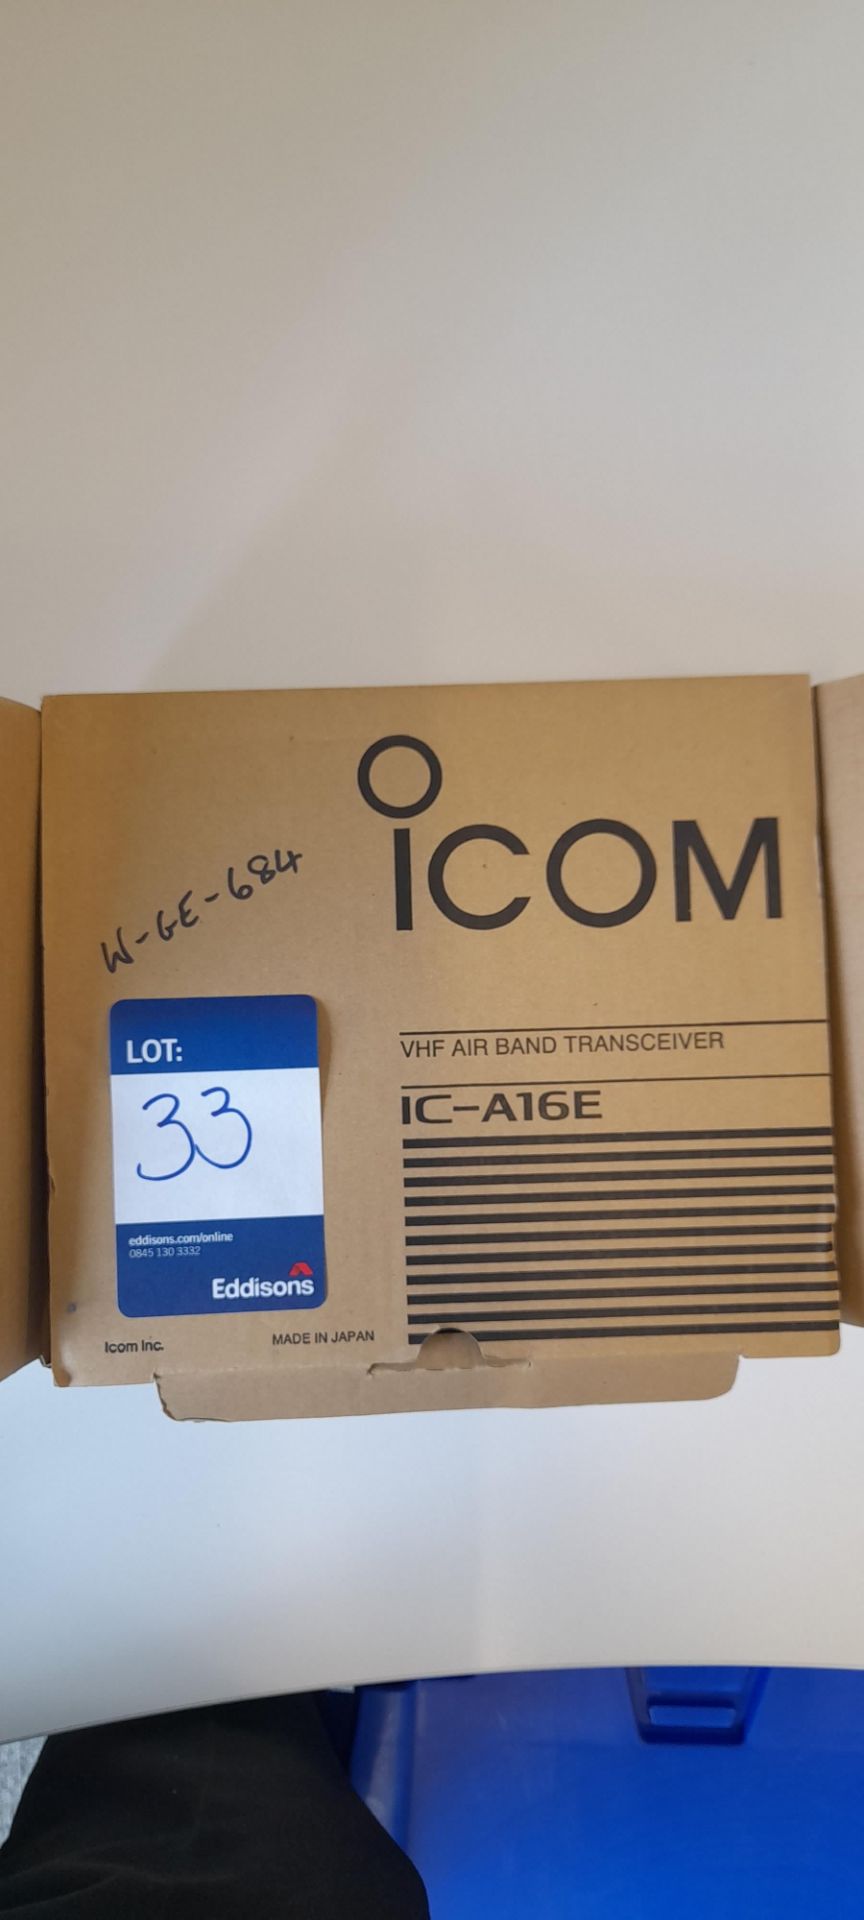 Icom VHF Air Band Transceiver IC-A16E - Image 2 of 3